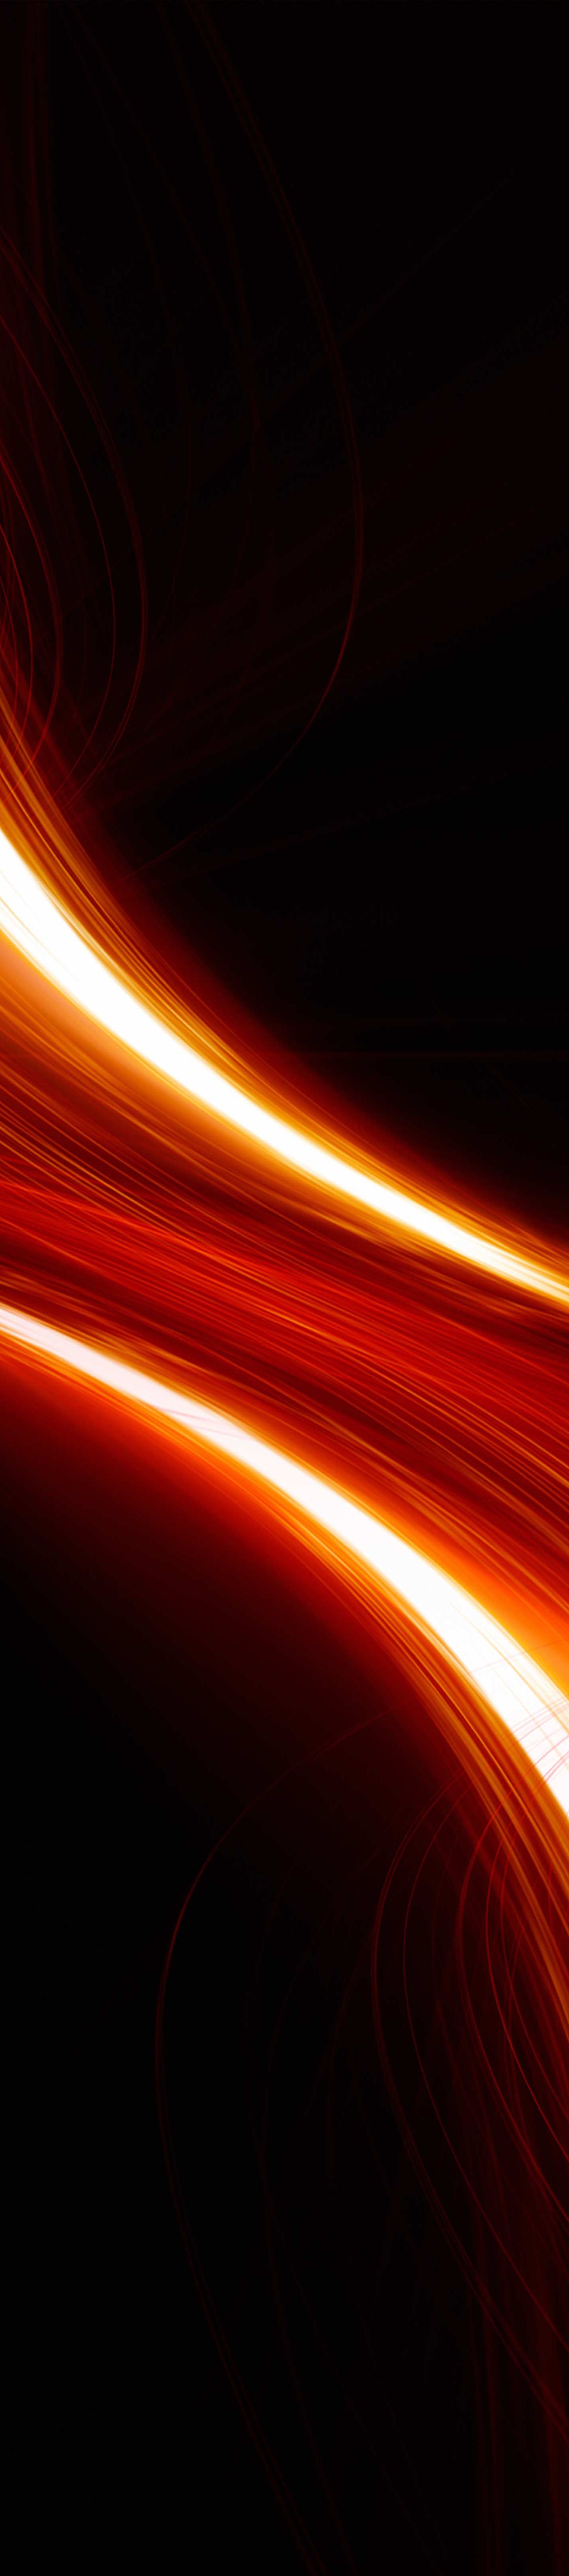 Photo de fond noir avec faisceaux lumineux rouges, orange et blanches